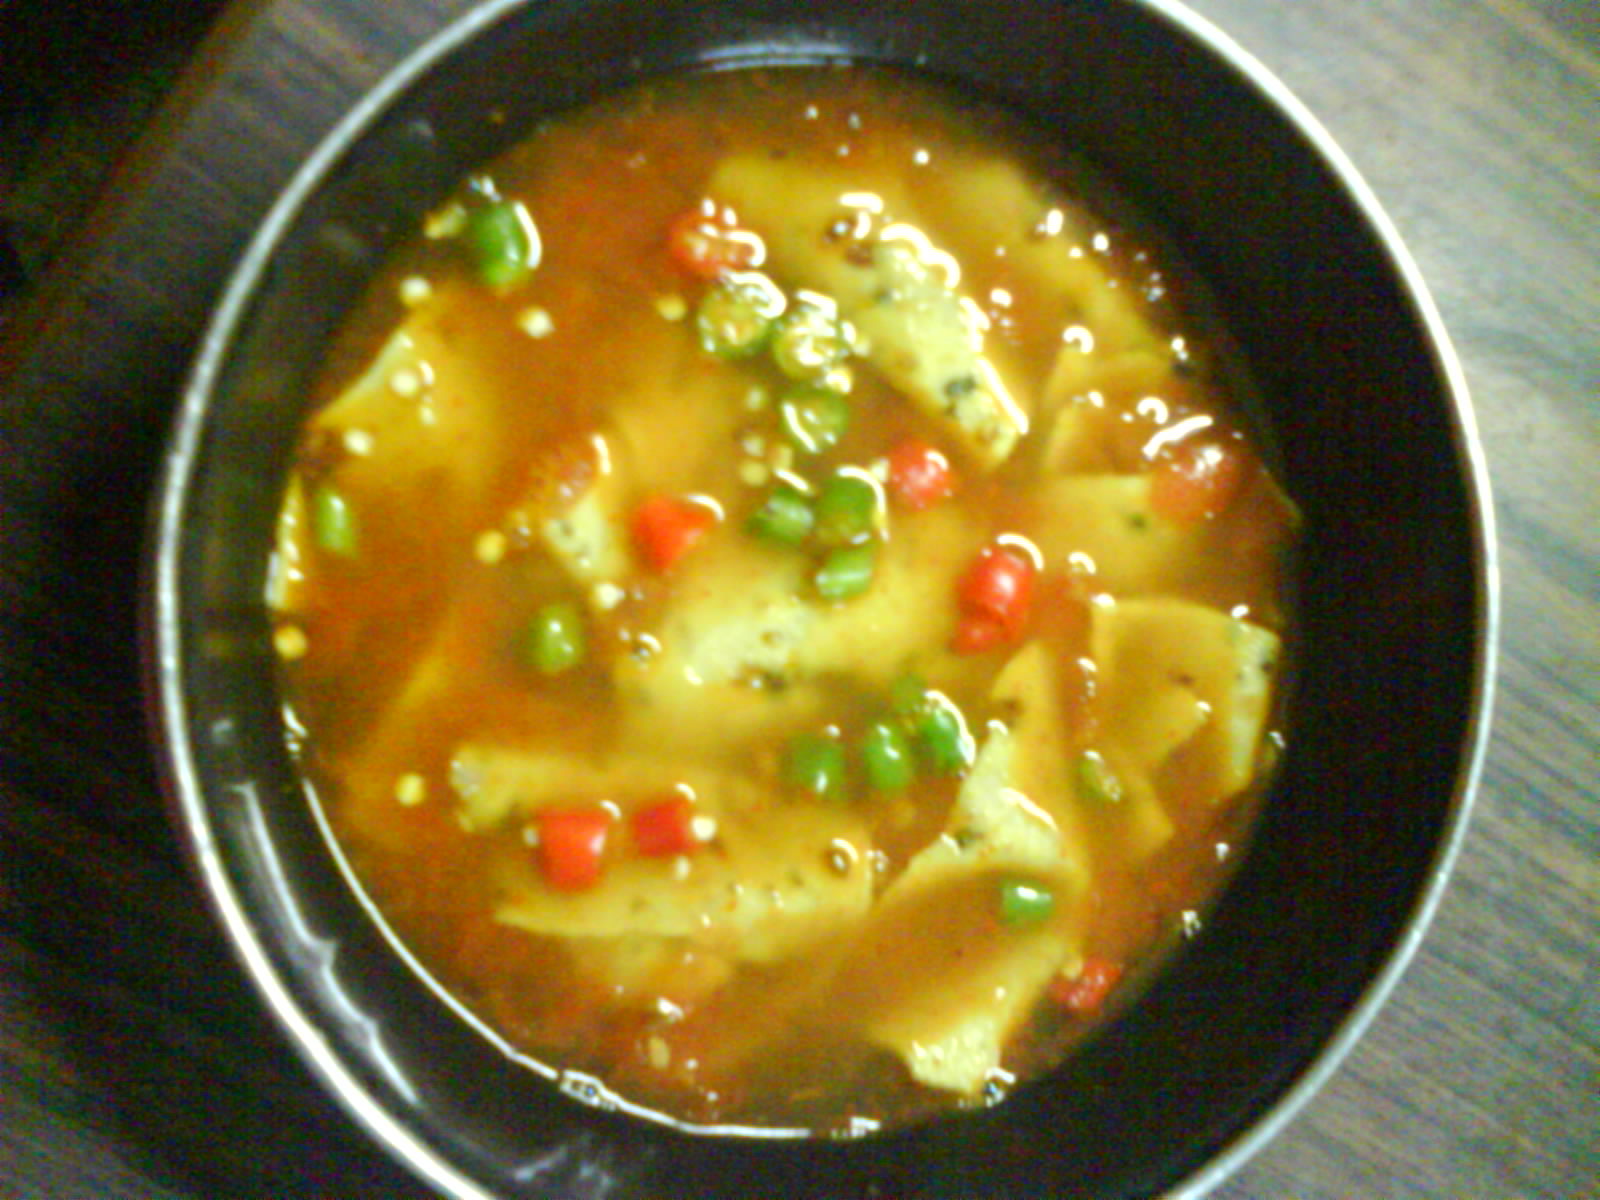 From mumma's kitchen: Papad Ki Sabzi (Papadum-Tomato Mix)